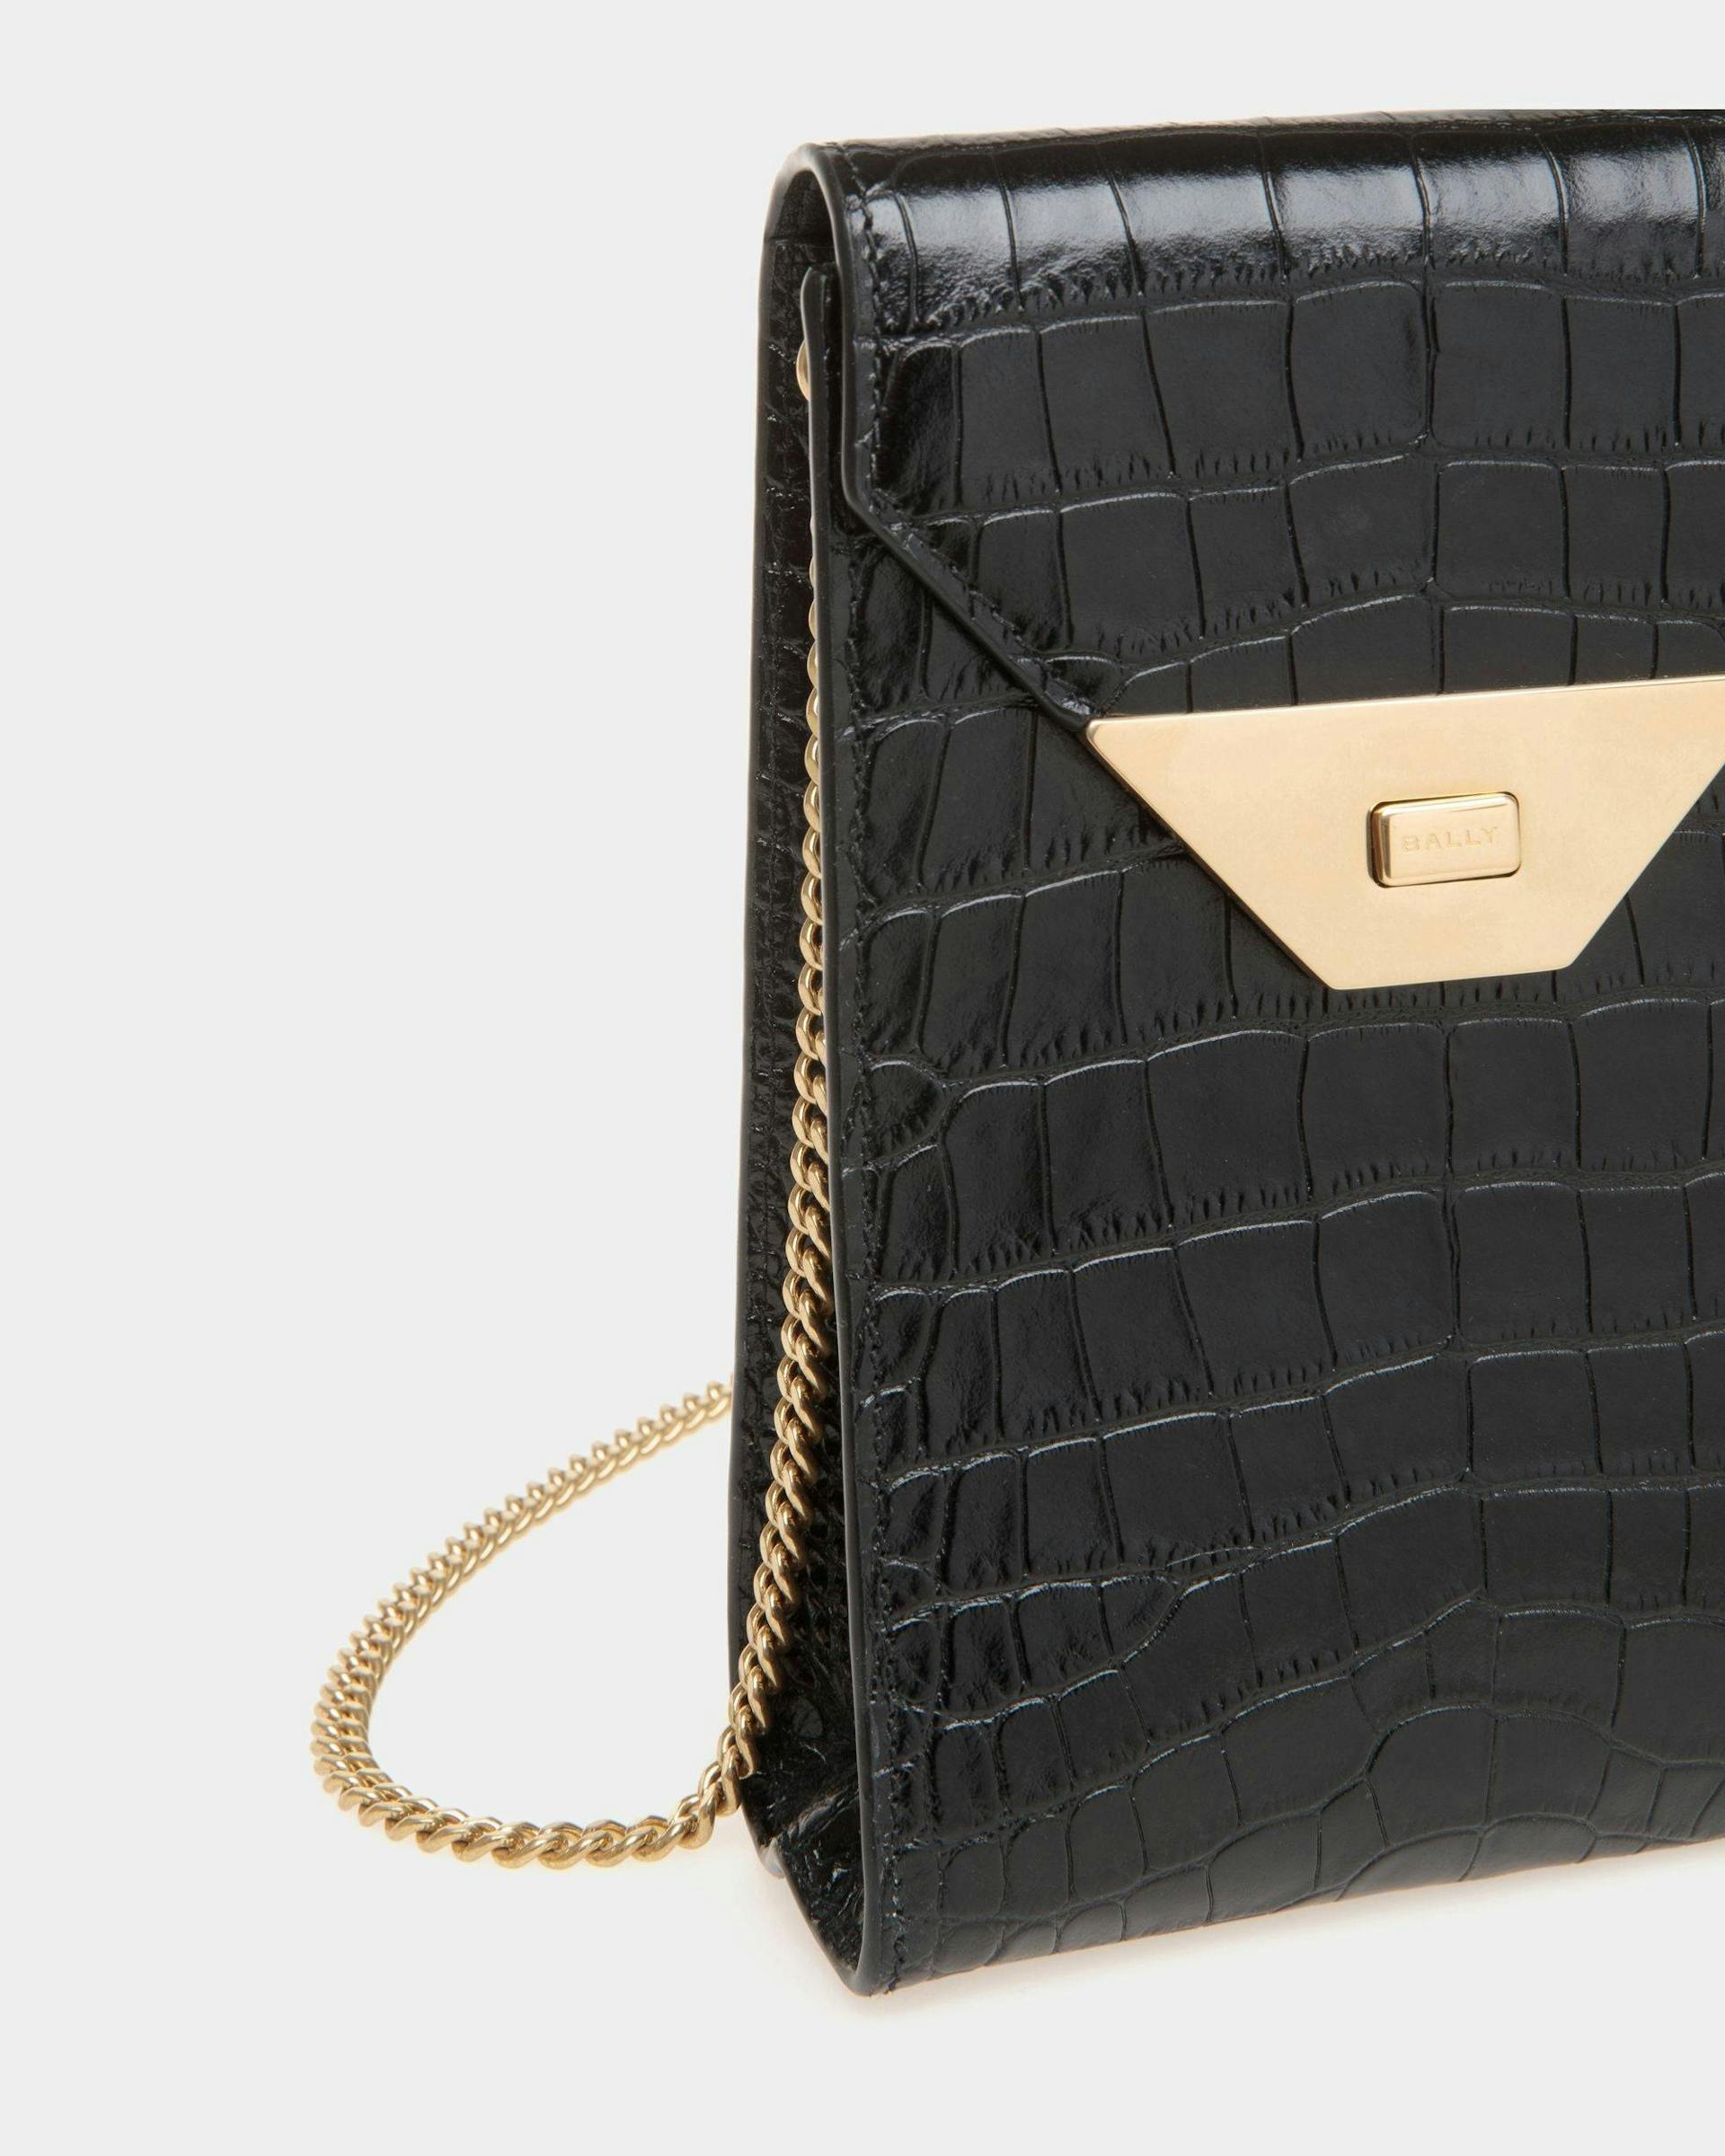 Women's Tilt Phone Bag in Black Crocodile Print Leather | Bally | Still Life Detail